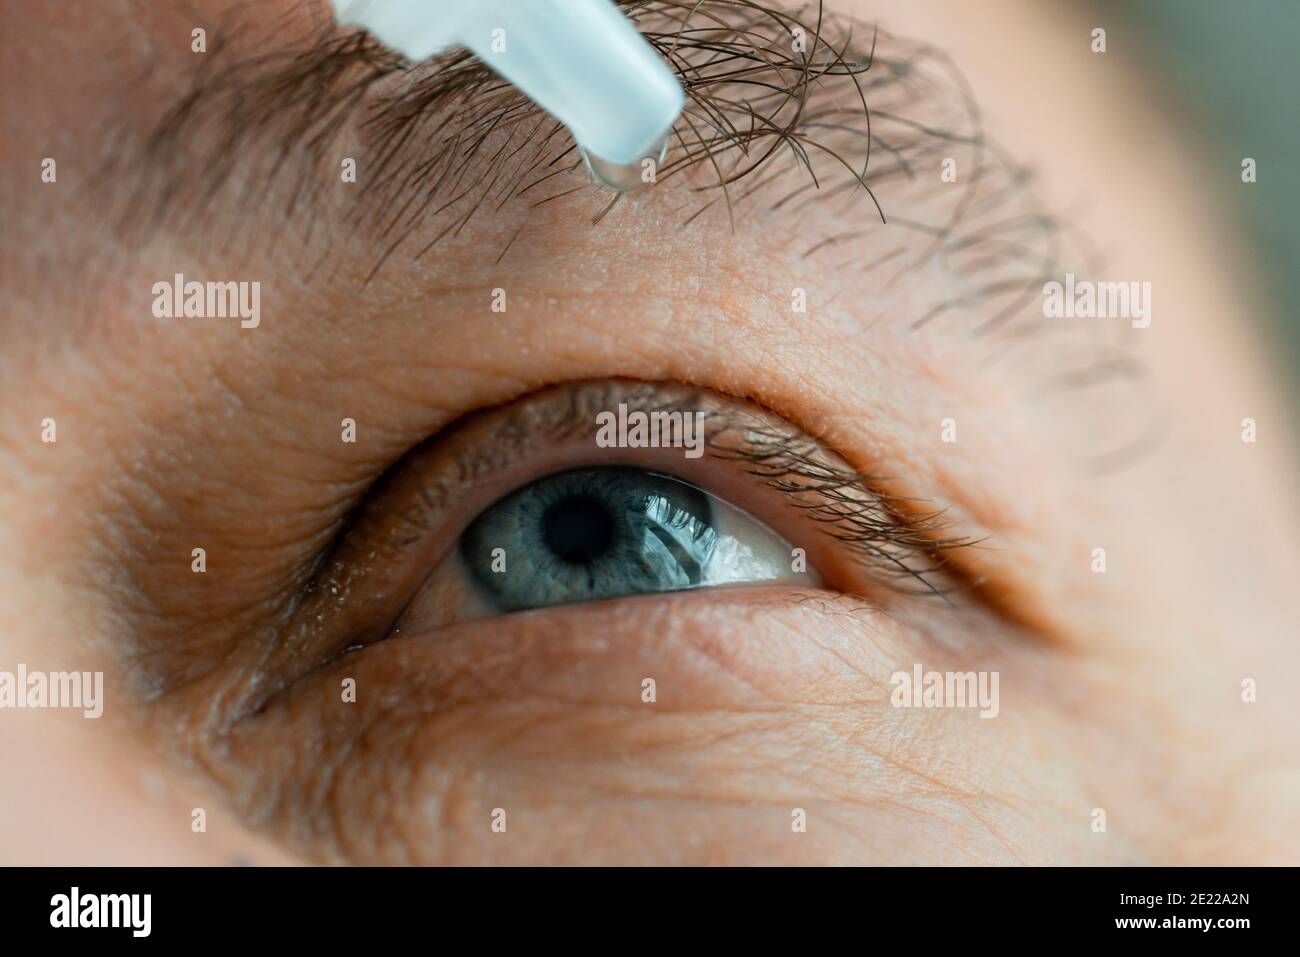 Ein Mann legt Augentropfen in seine Augen, bevor er Kontaktlinsen aufsetzt. Probleme mit der Lösungsvision. Stockfoto